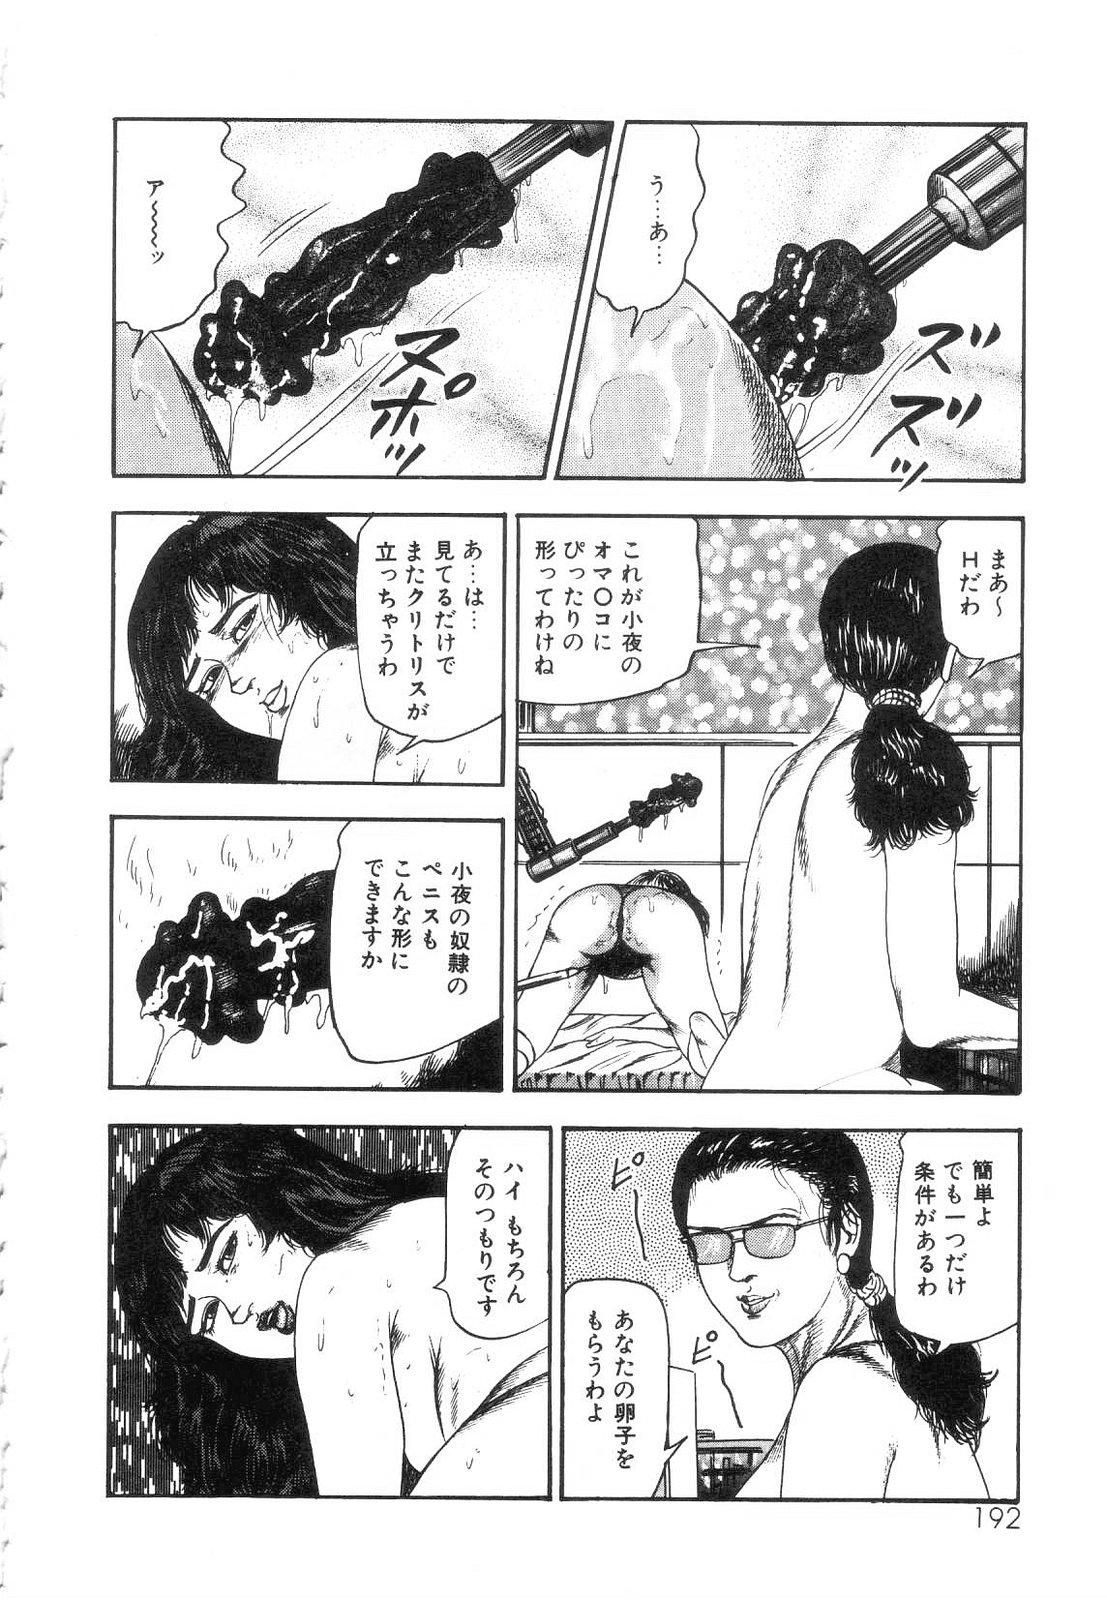 Shiro no Mokushiroku Vol. 5 - Ninshoujo Erika no Shou 193